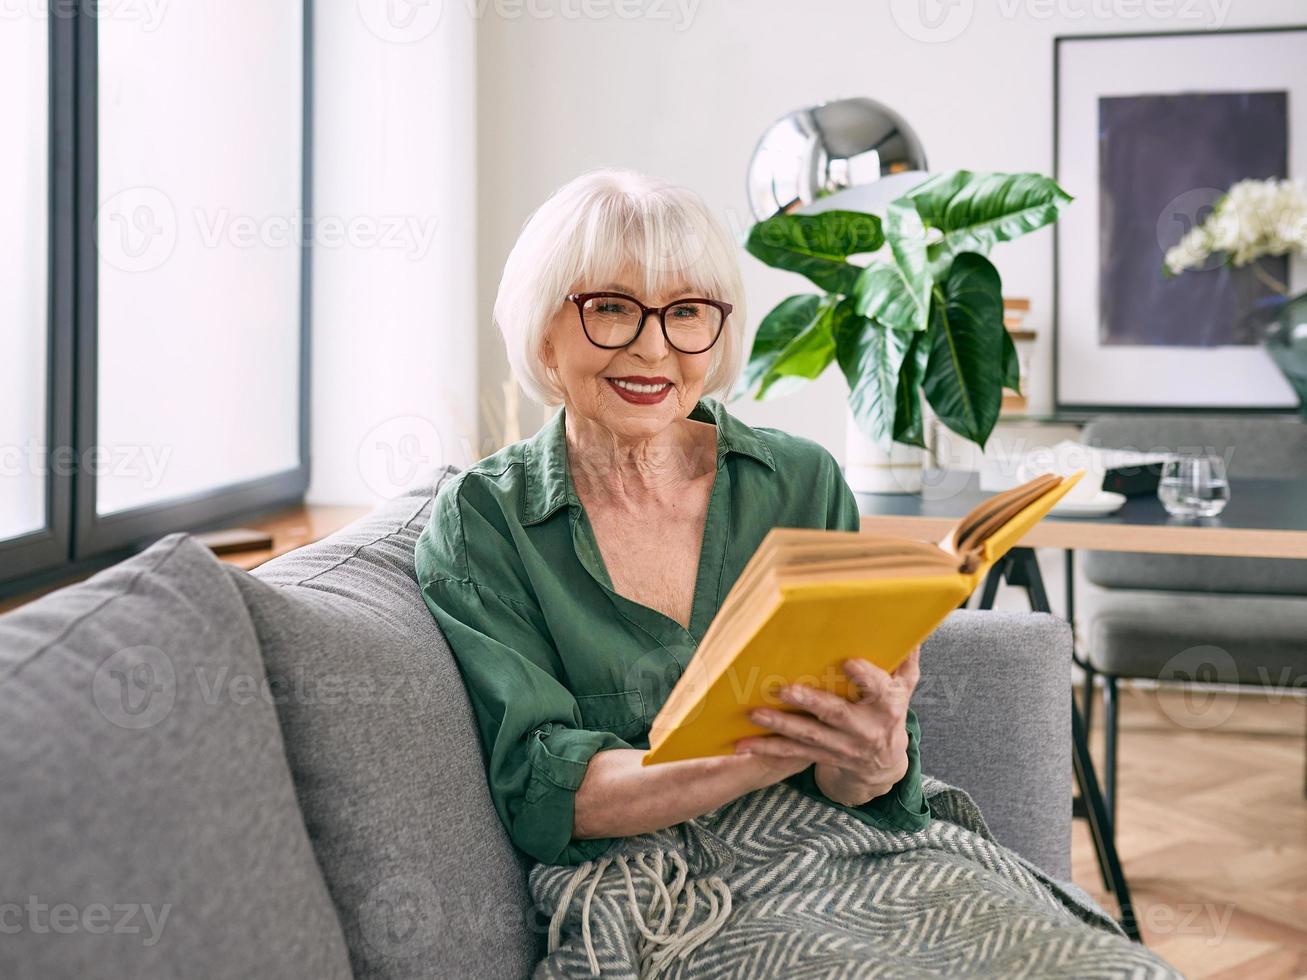 glad senior kvinna sitter i soffan och läser en bok hemma. utbildning, mogna, fritid koncept foto